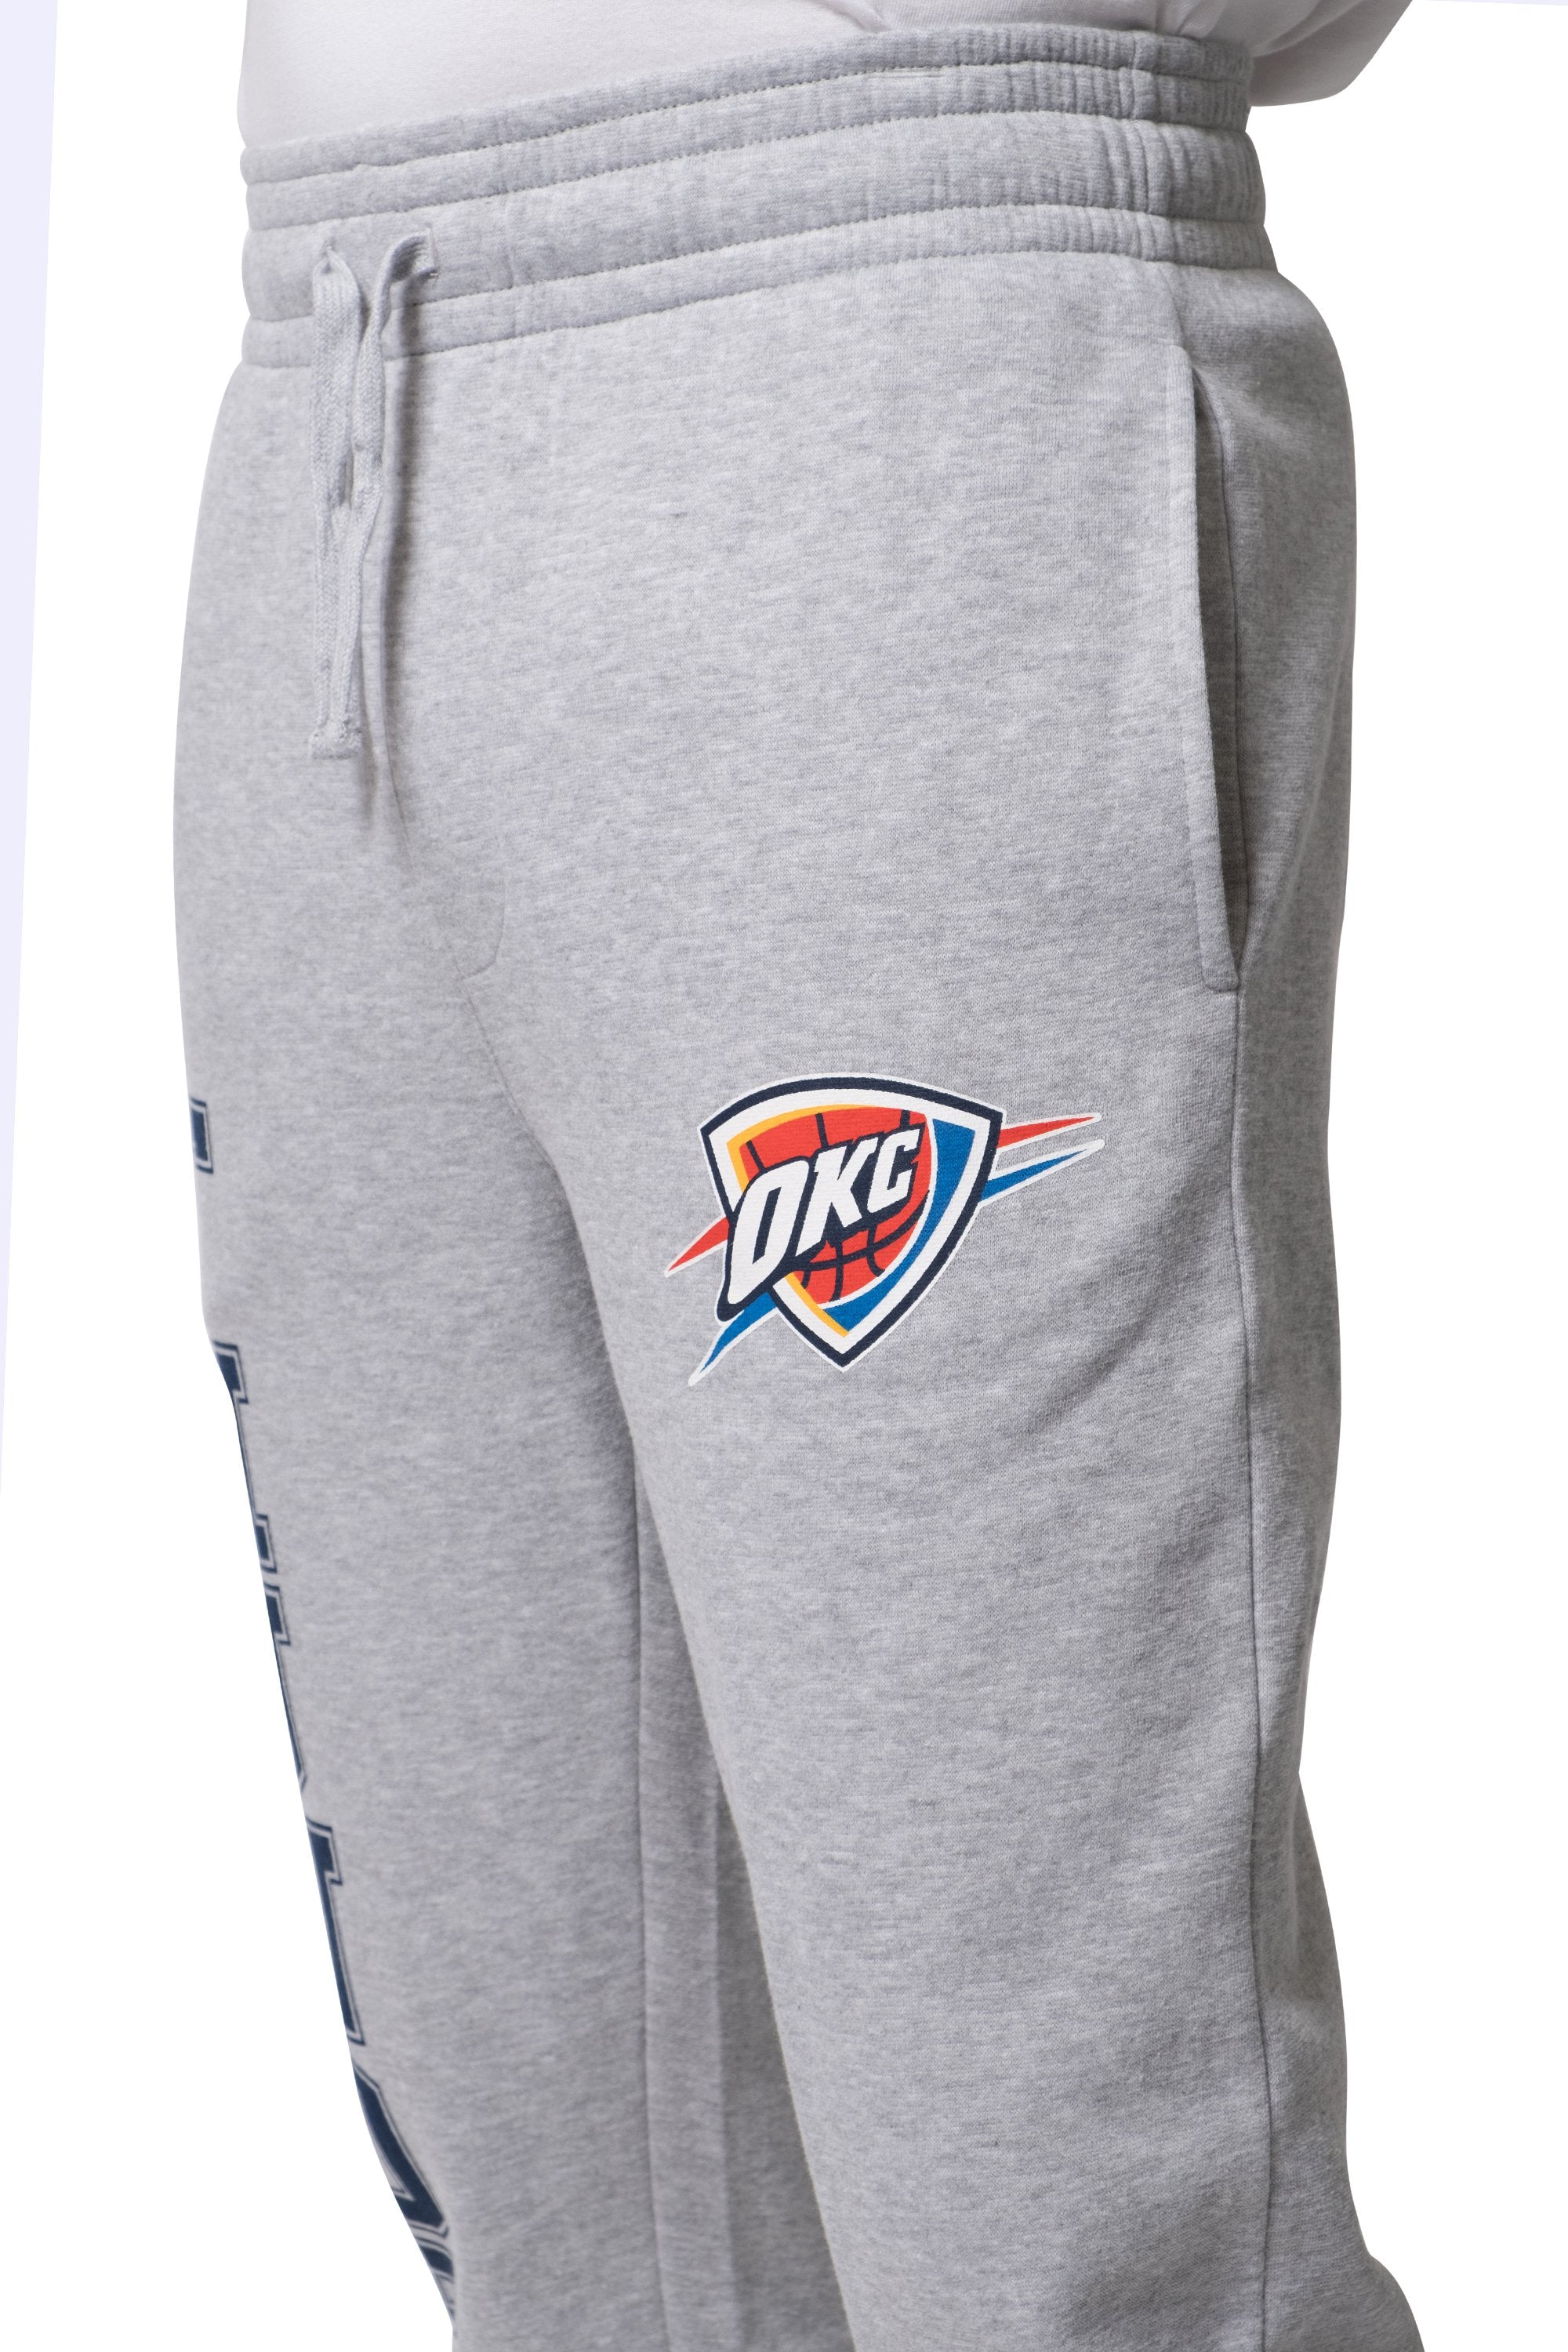 NBA Oklahoma City Thunder Men's Soft Terry Sweatpants|Oklahoma City Thunder